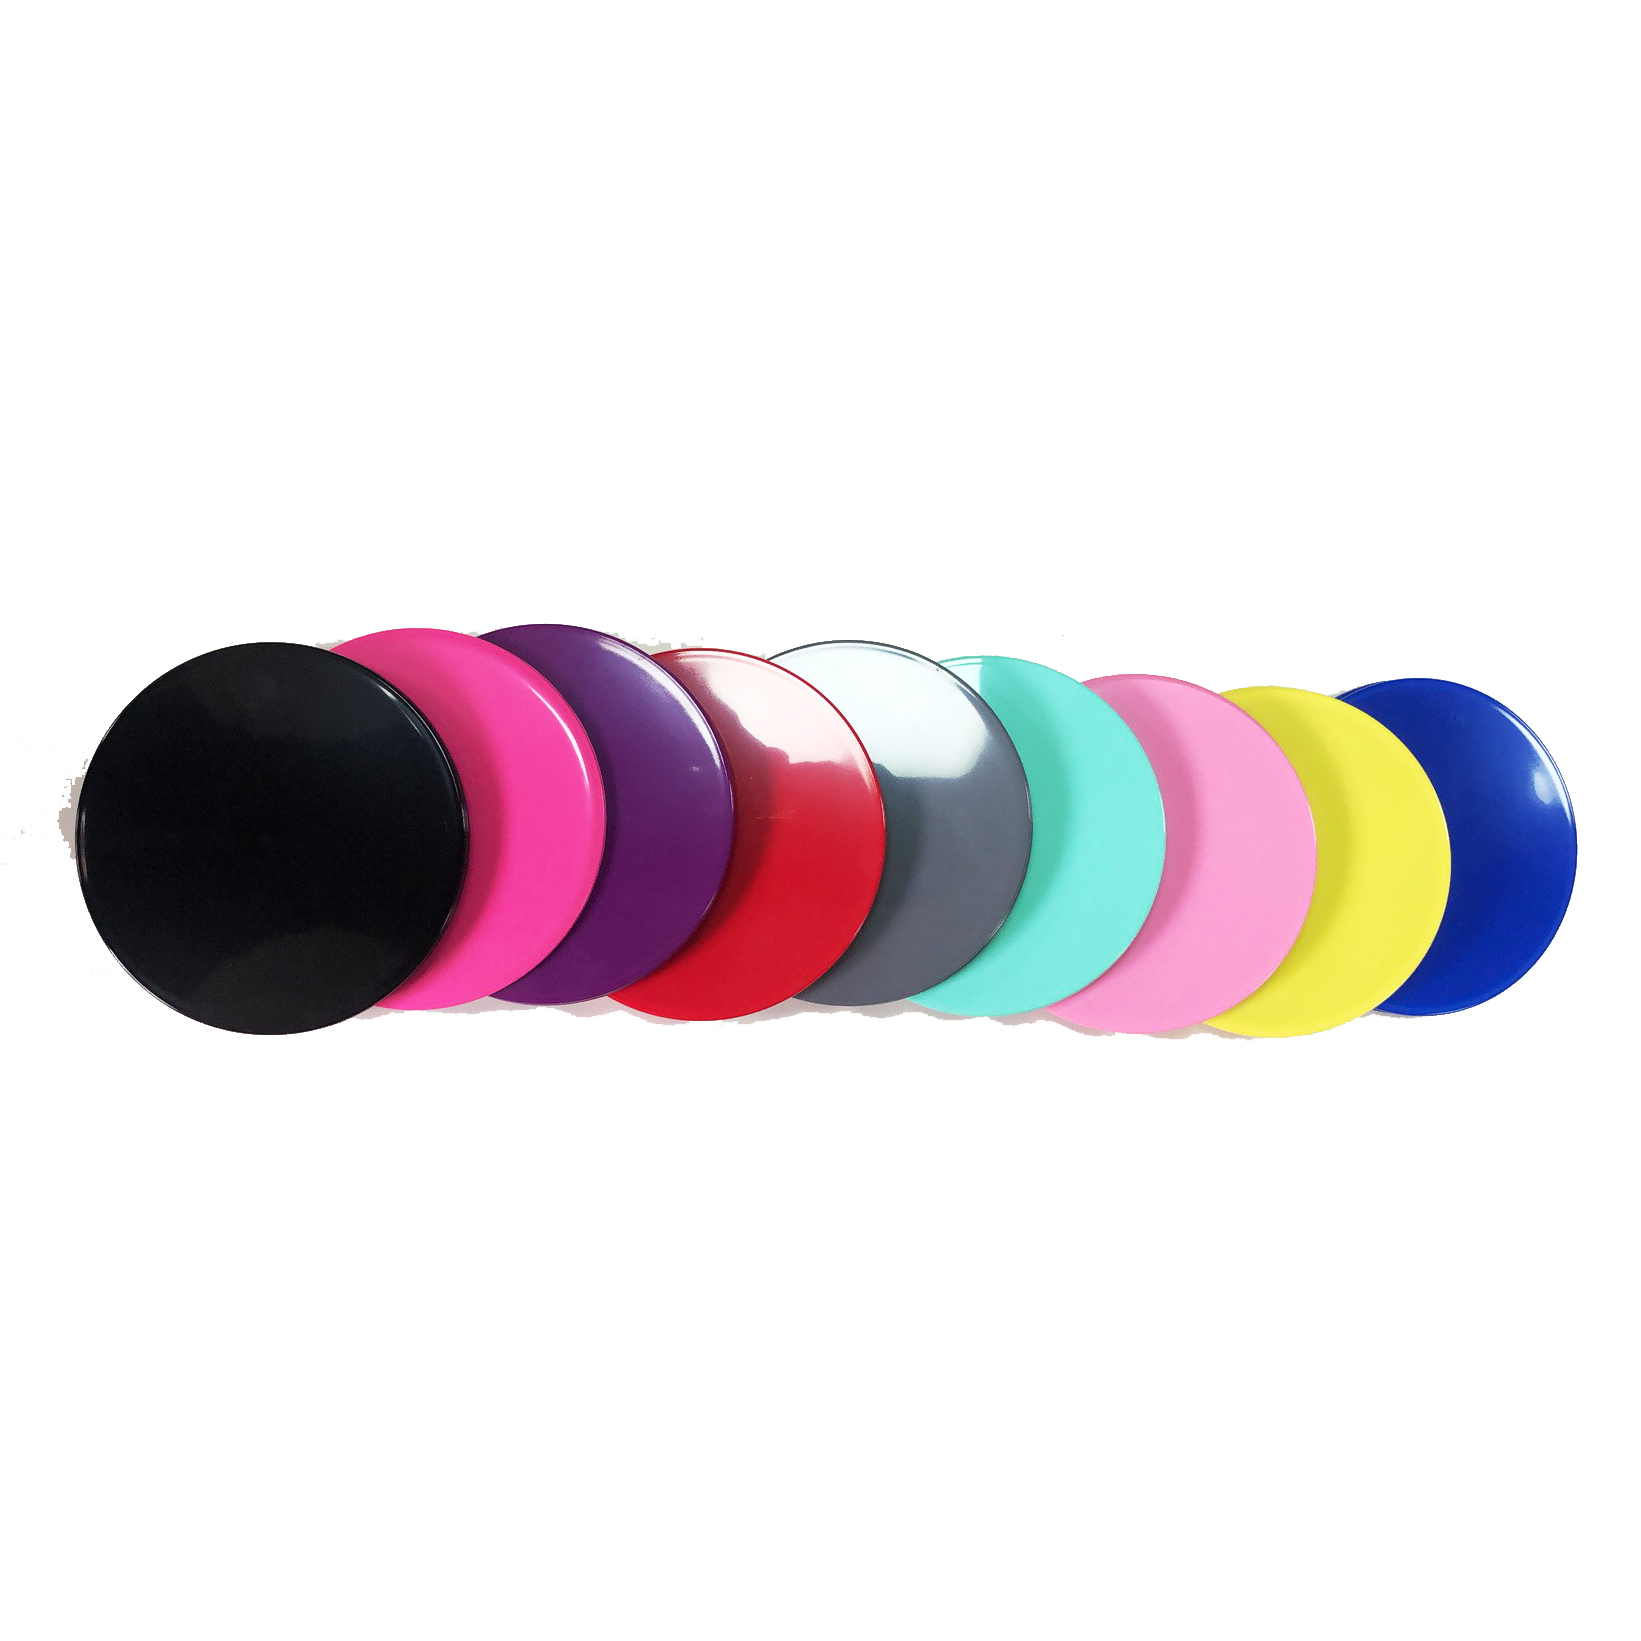 Оптовая торговля пользовательскими высококачественными упражнениями для фитнеса Pink Gliding Core Sliders Disc